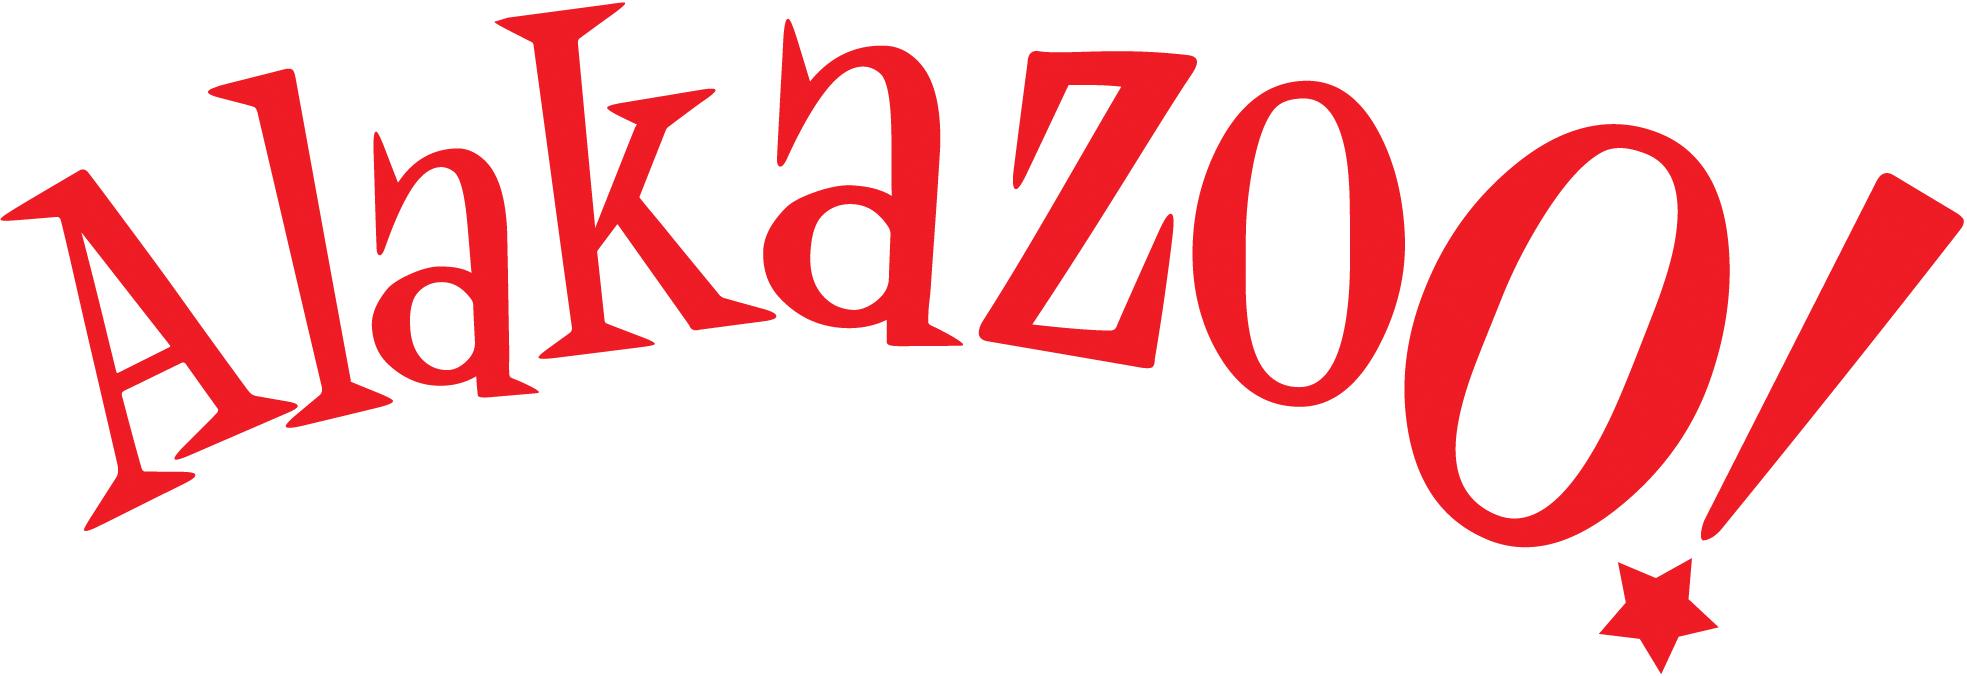 Coleção Alakazoo Verão 2023 – Fotos, Modelos, Tendências e Loja virtual